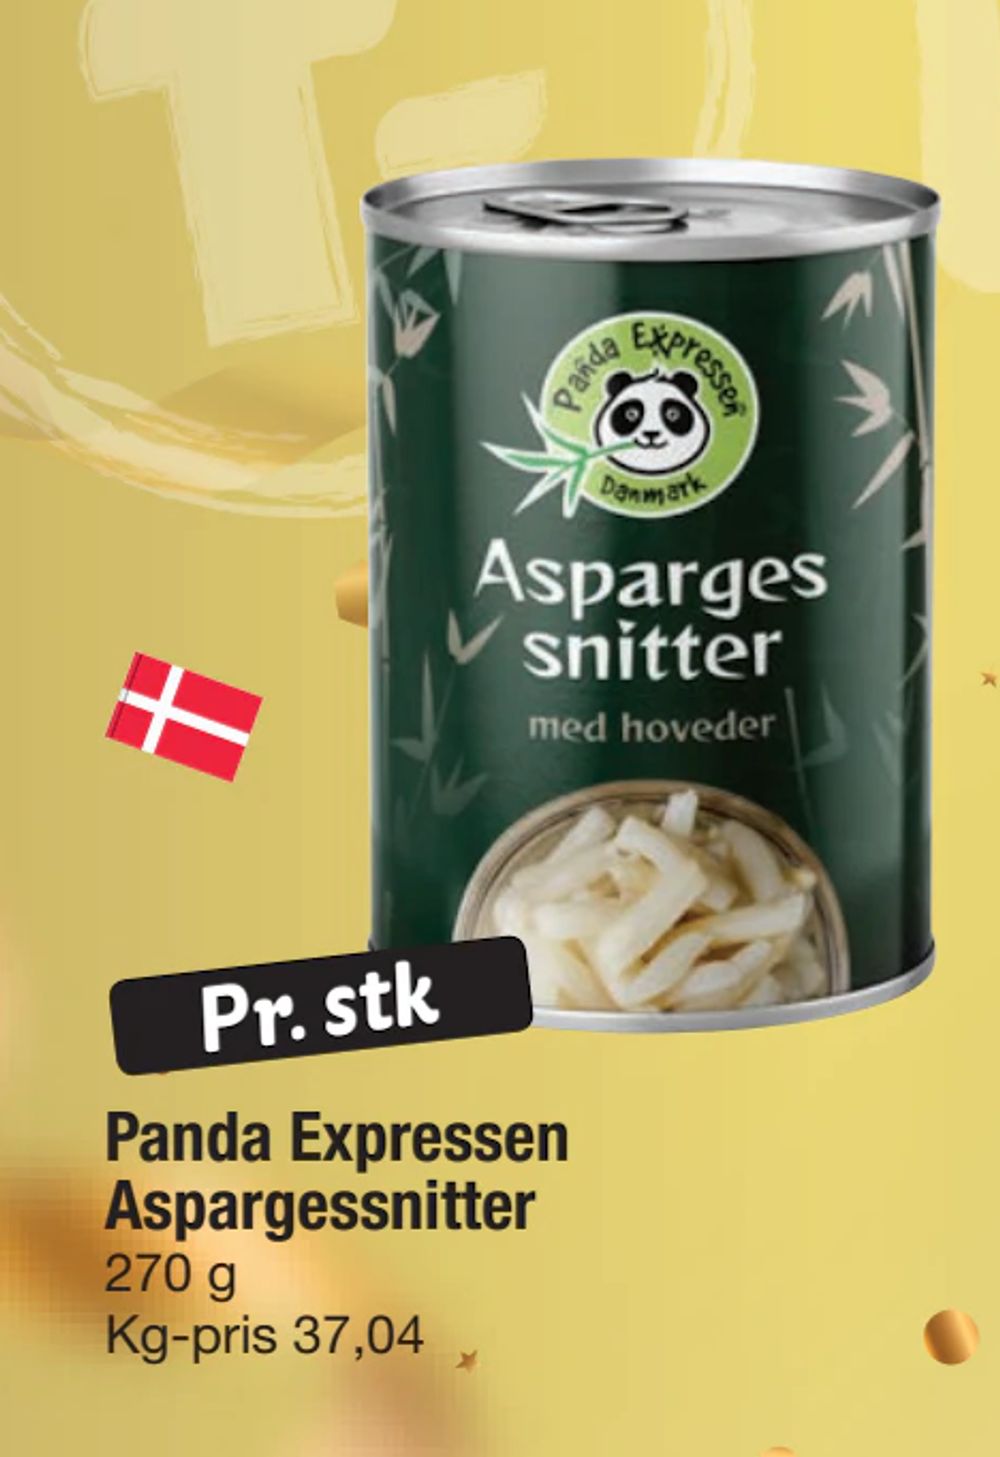 Tilbud på Panda Expressen Aspargessnitter fra fakta Tyskland til 10 kr.